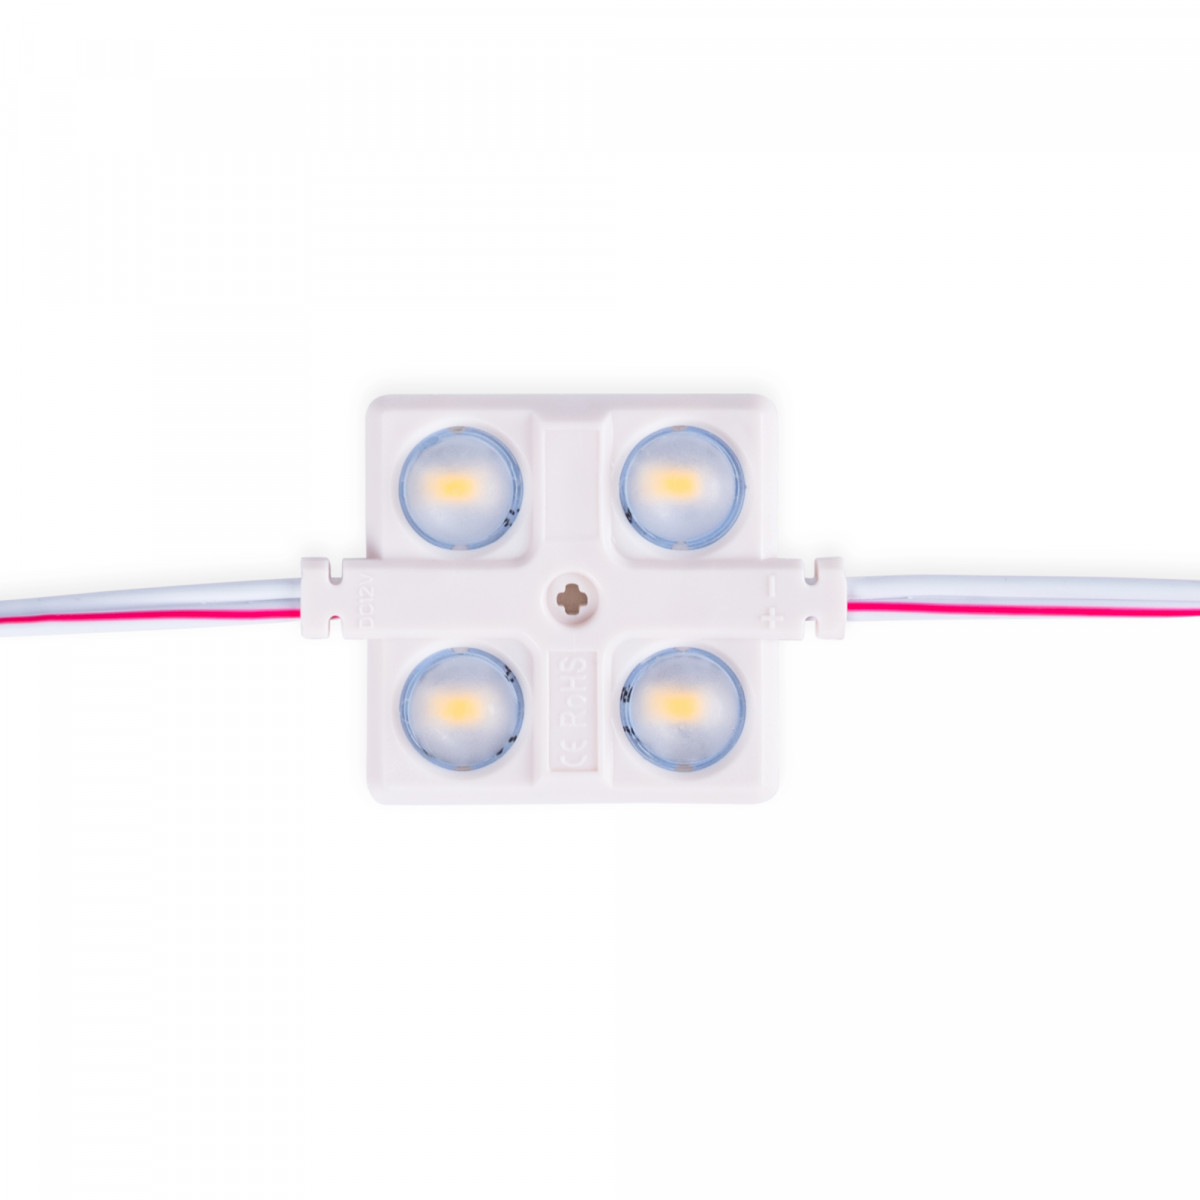 LED Modulkette für den Werbeeinsatz - 2W - 12V - IP65 - 160° - 6000K - Profilbuchstabe, Werbung, Signaletik, Leuchtbuchstabe